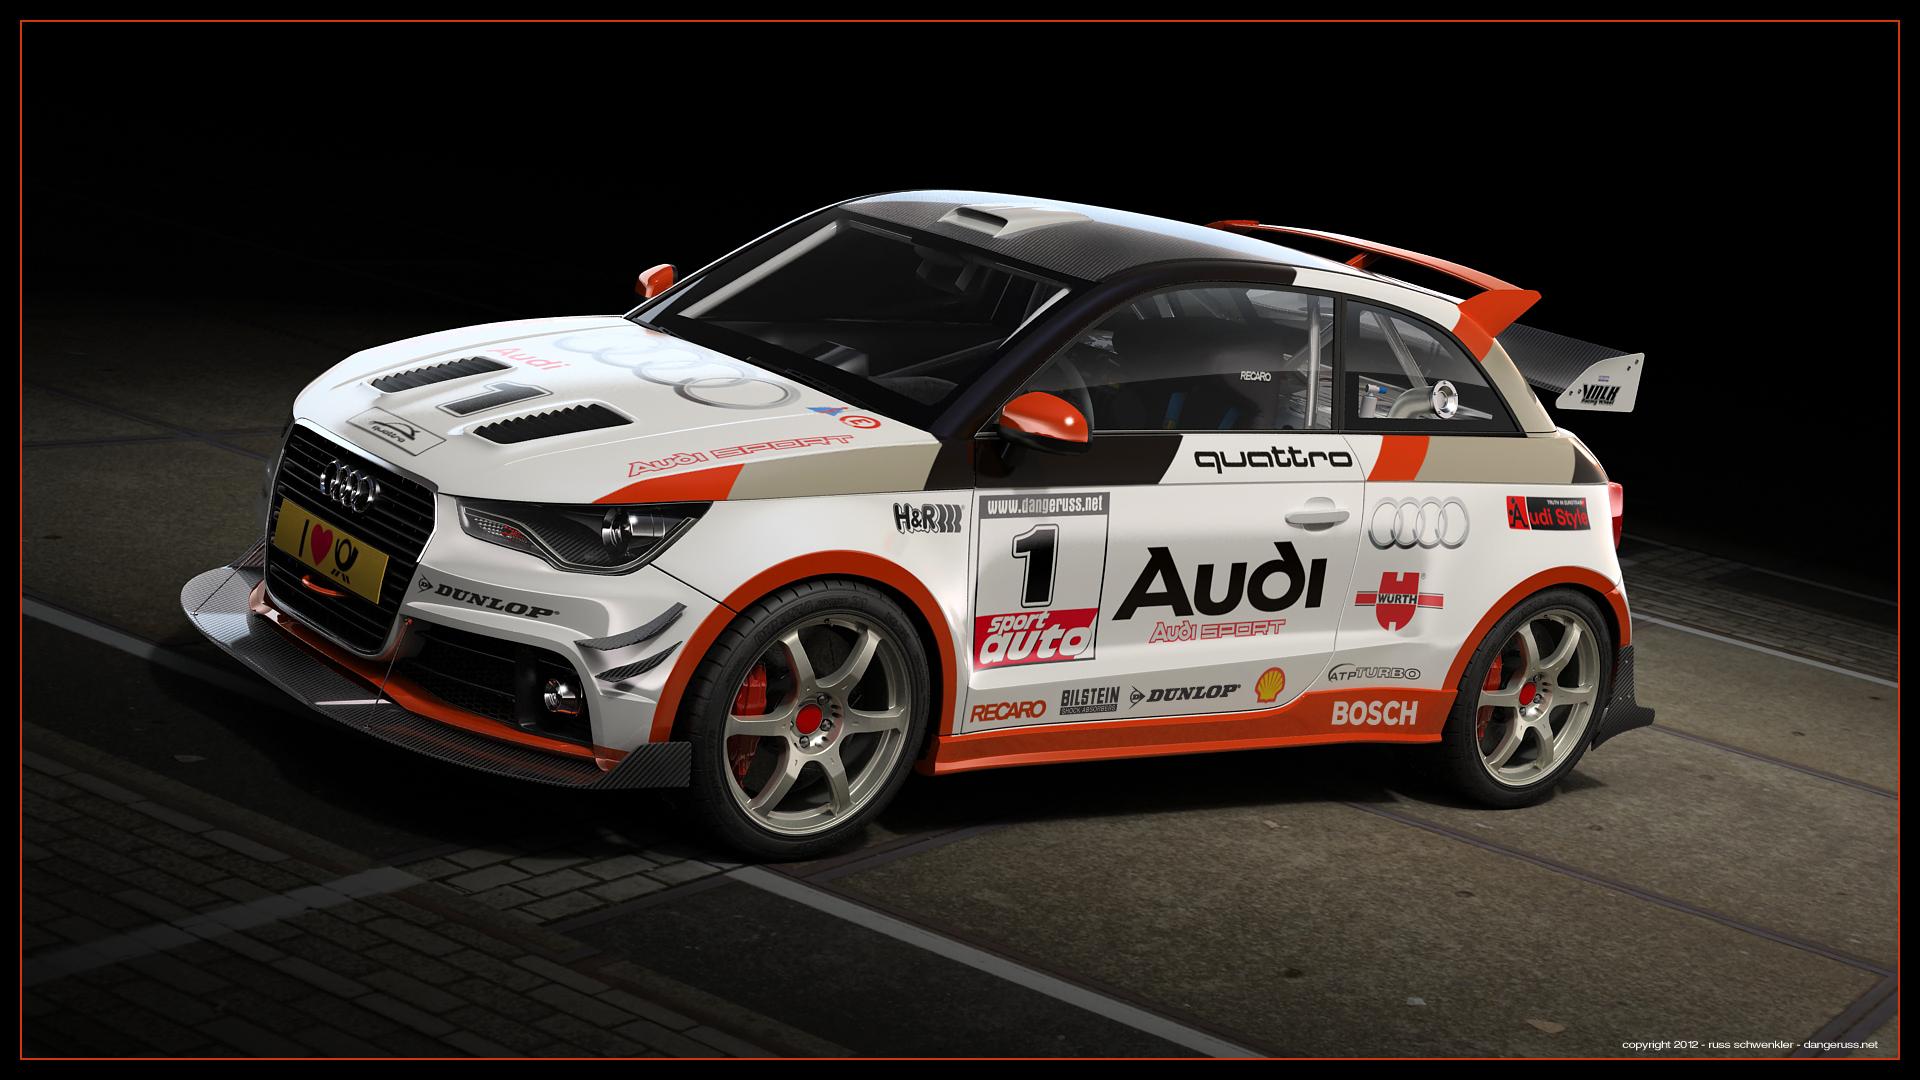 Artwork: Audi A1 quattro WRC Audi Motorsport Blog